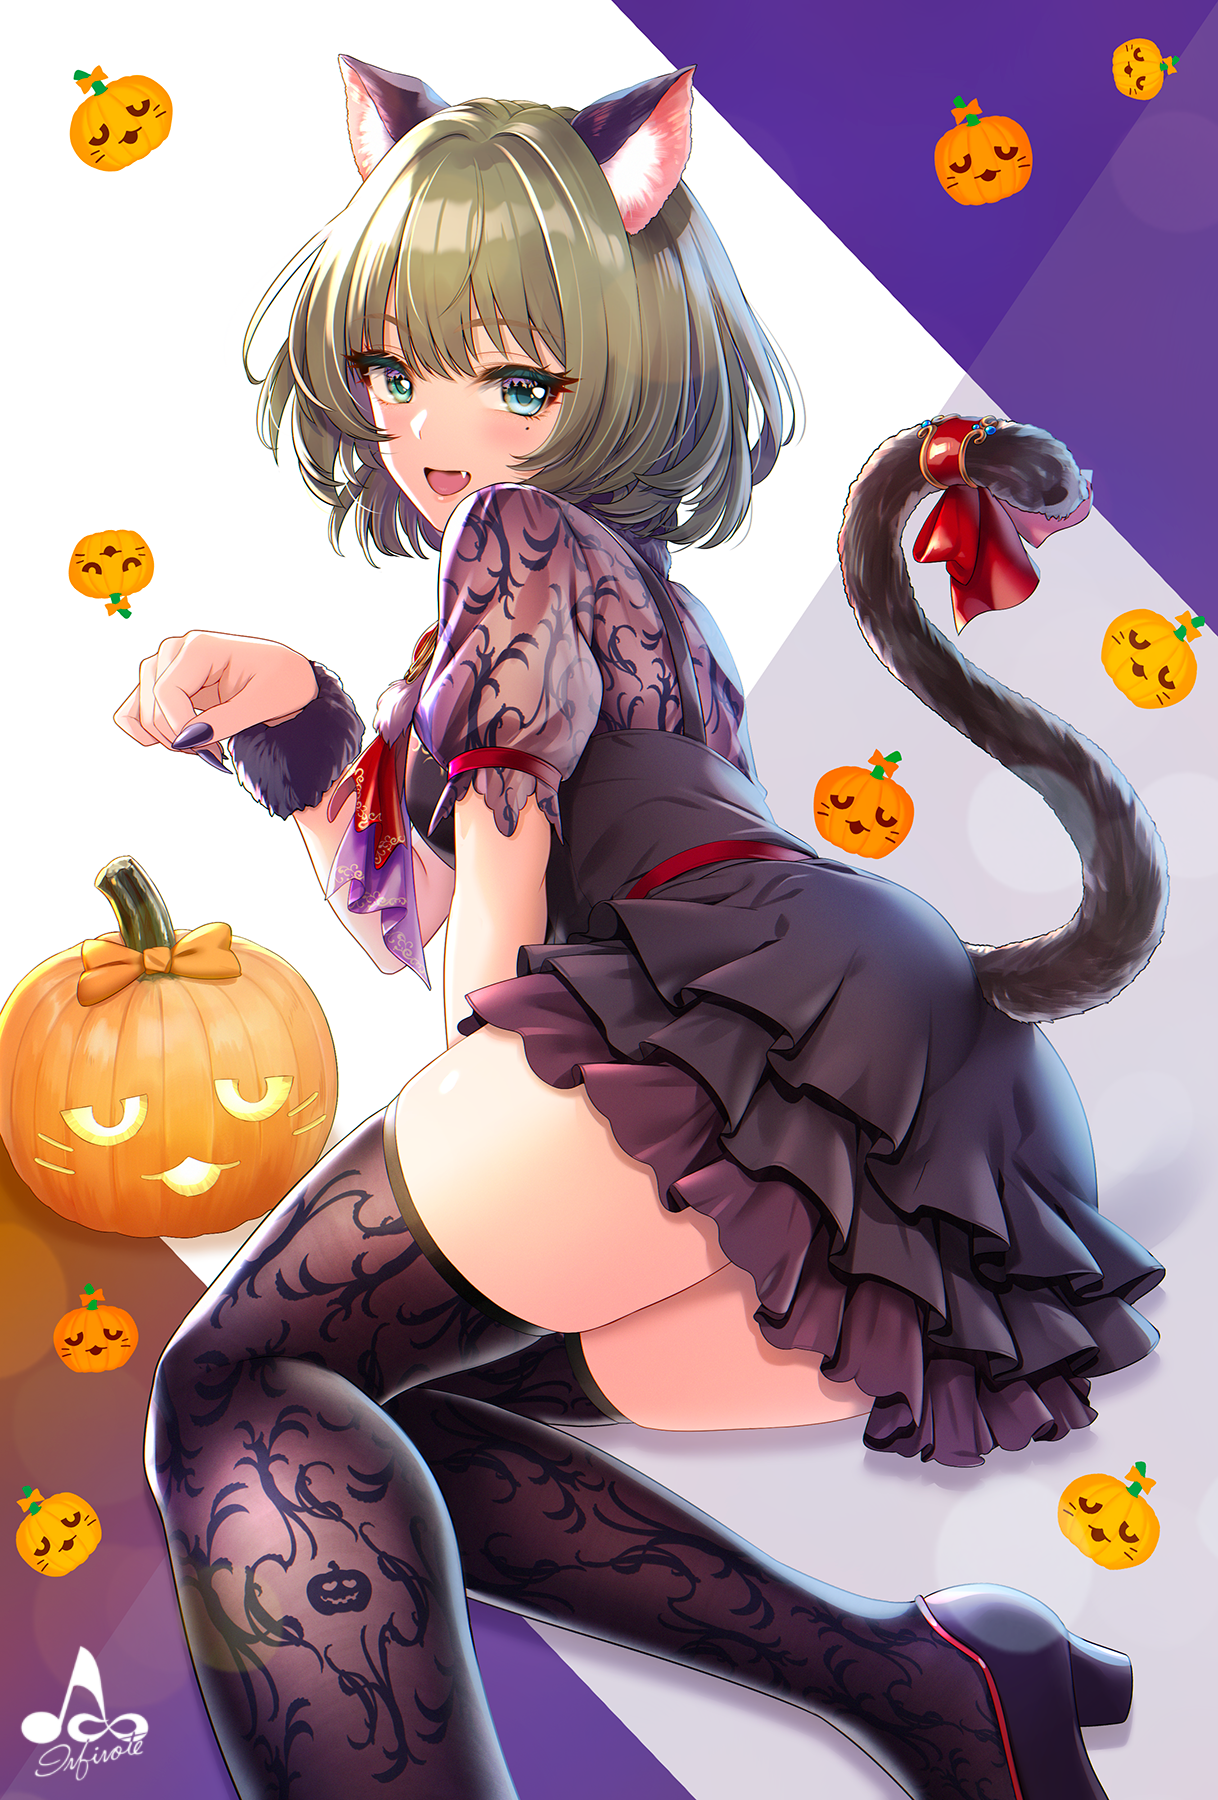 Anime 1218x1800 anime anime girls digital art artwork 2D portrait display black stockings infinote THE iDOLM@STER Takagaki Kaede Halloween cat girl dress